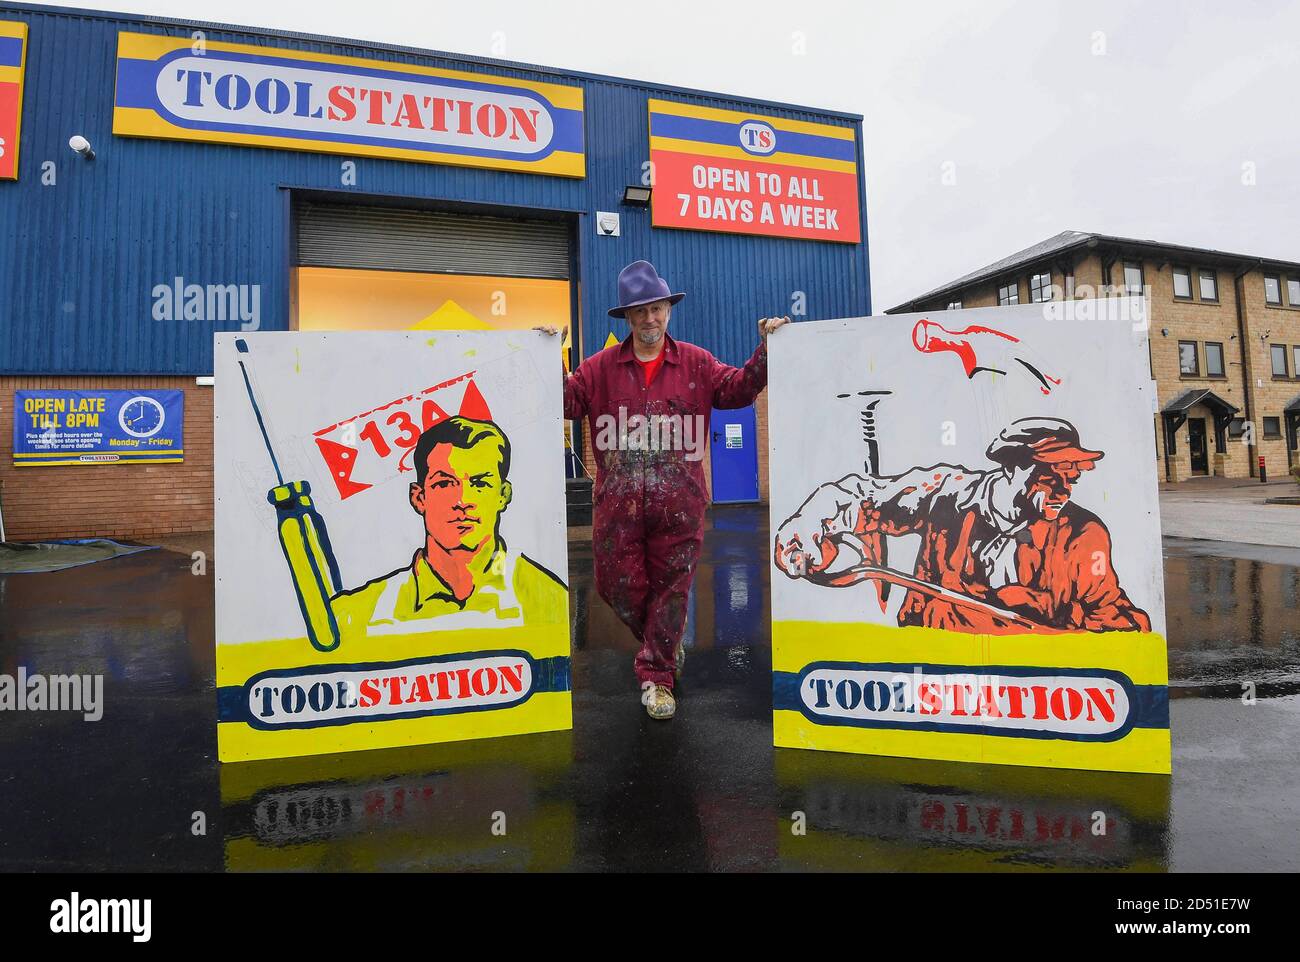 L'artista Trafford Parsons, che in precedenza ha lavorato ed esposto con Banksy, lancia la serie di installazioni di arte dal vivo di Toolstation che celebra l'industria dei mestieri all'apertura del nuovo negozio Toolstation a Pudsey, West Yorkshire. Foto Stock